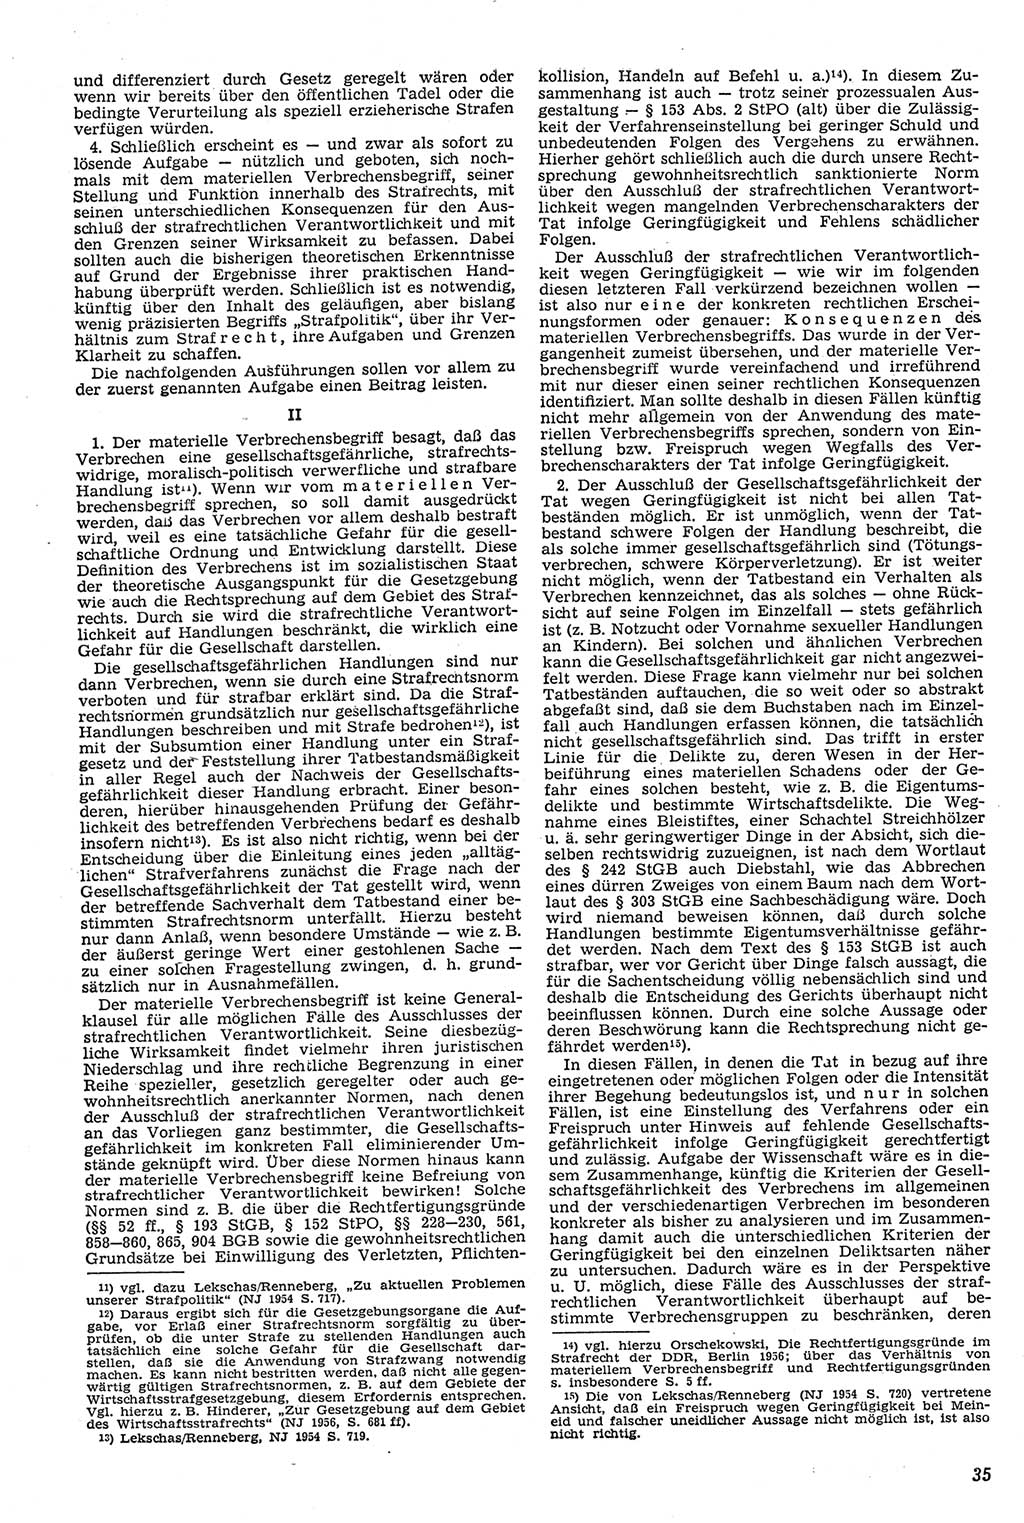 Neue Justiz (NJ), Zeitschrift für Recht und Rechtswissenschaft [Deutsche Demokratische Republik (DDR)], 11. Jahrgang 1957, Seite 35 (NJ DDR 1957, S. 35)